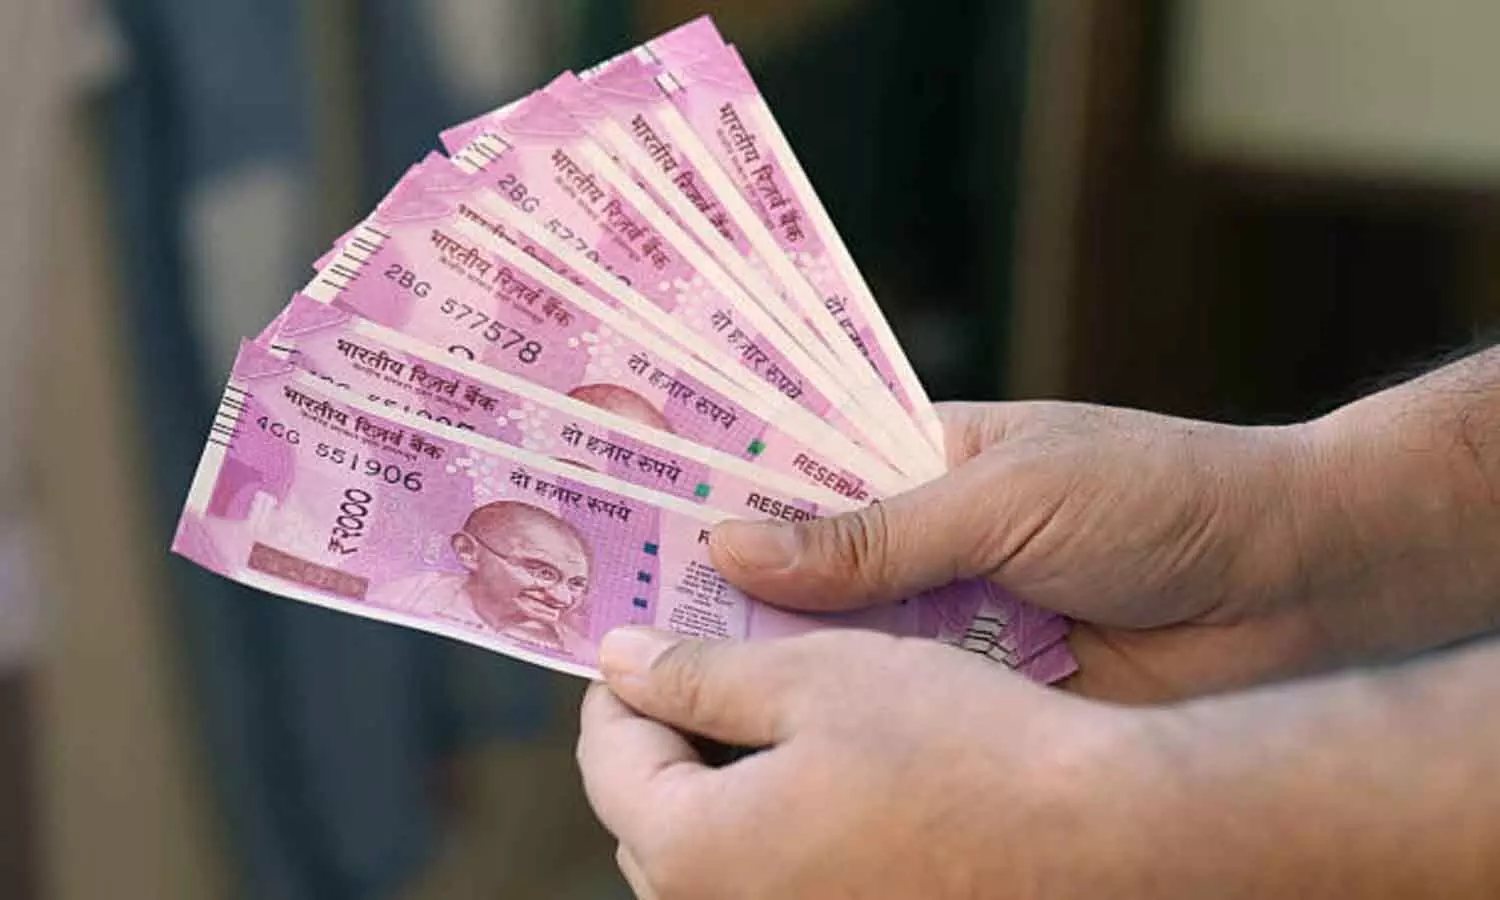 2000 Note Exchange: अब 7 अक्टूबर तक बदल सकेंगे 2 हजार रुपए के गुलाबी नोट, यहां पर जानें पूरी प्रक्रिया